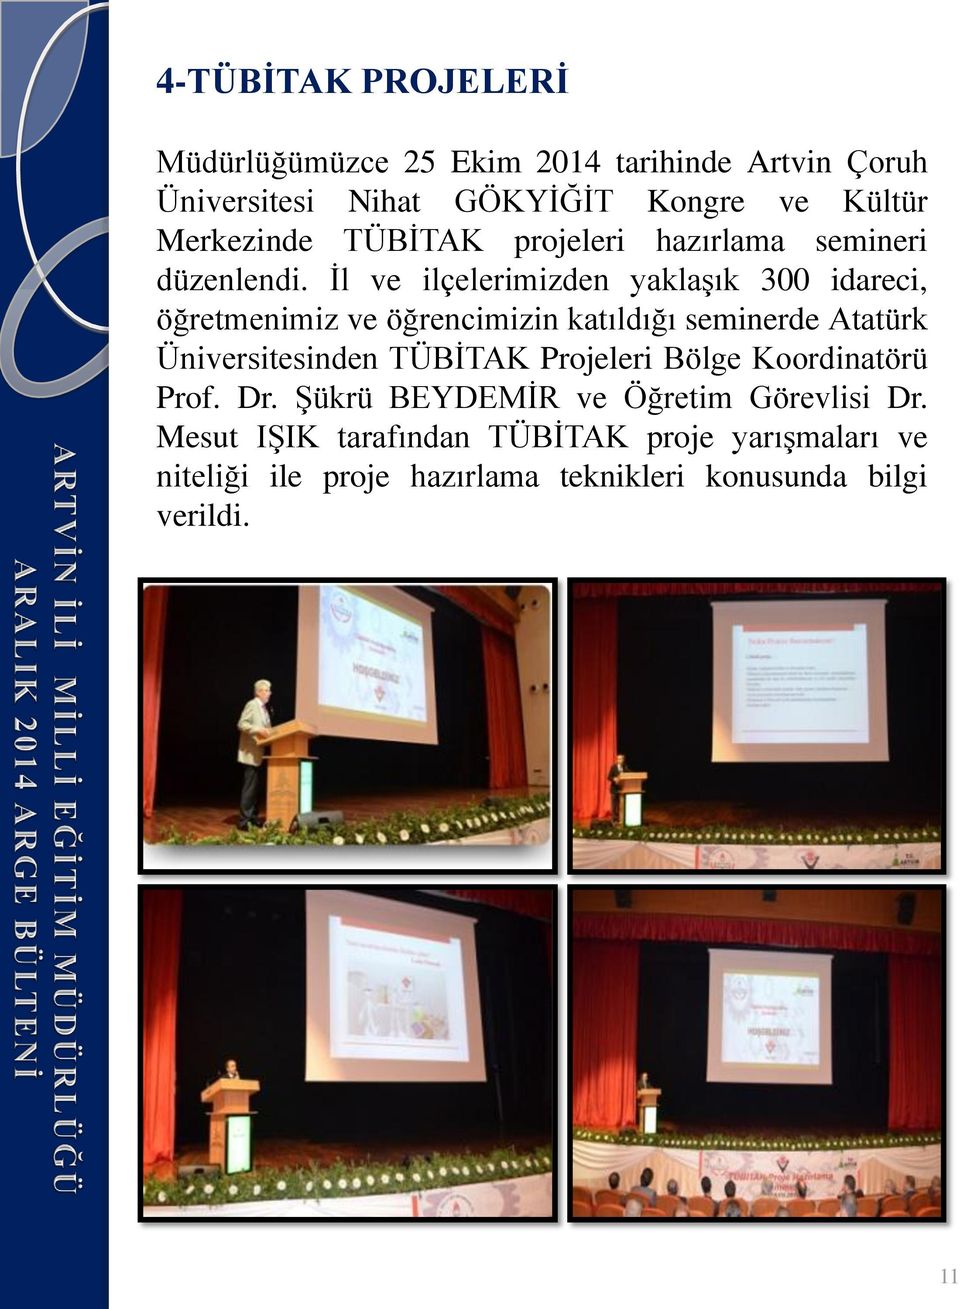 Ġl ve ilçelerimizden yaklaģık 300 idareci, öğretmenimiz ve öğrencimizin katıldığı seminerde Atatürk Üniversitesinden TÜBĠTAK